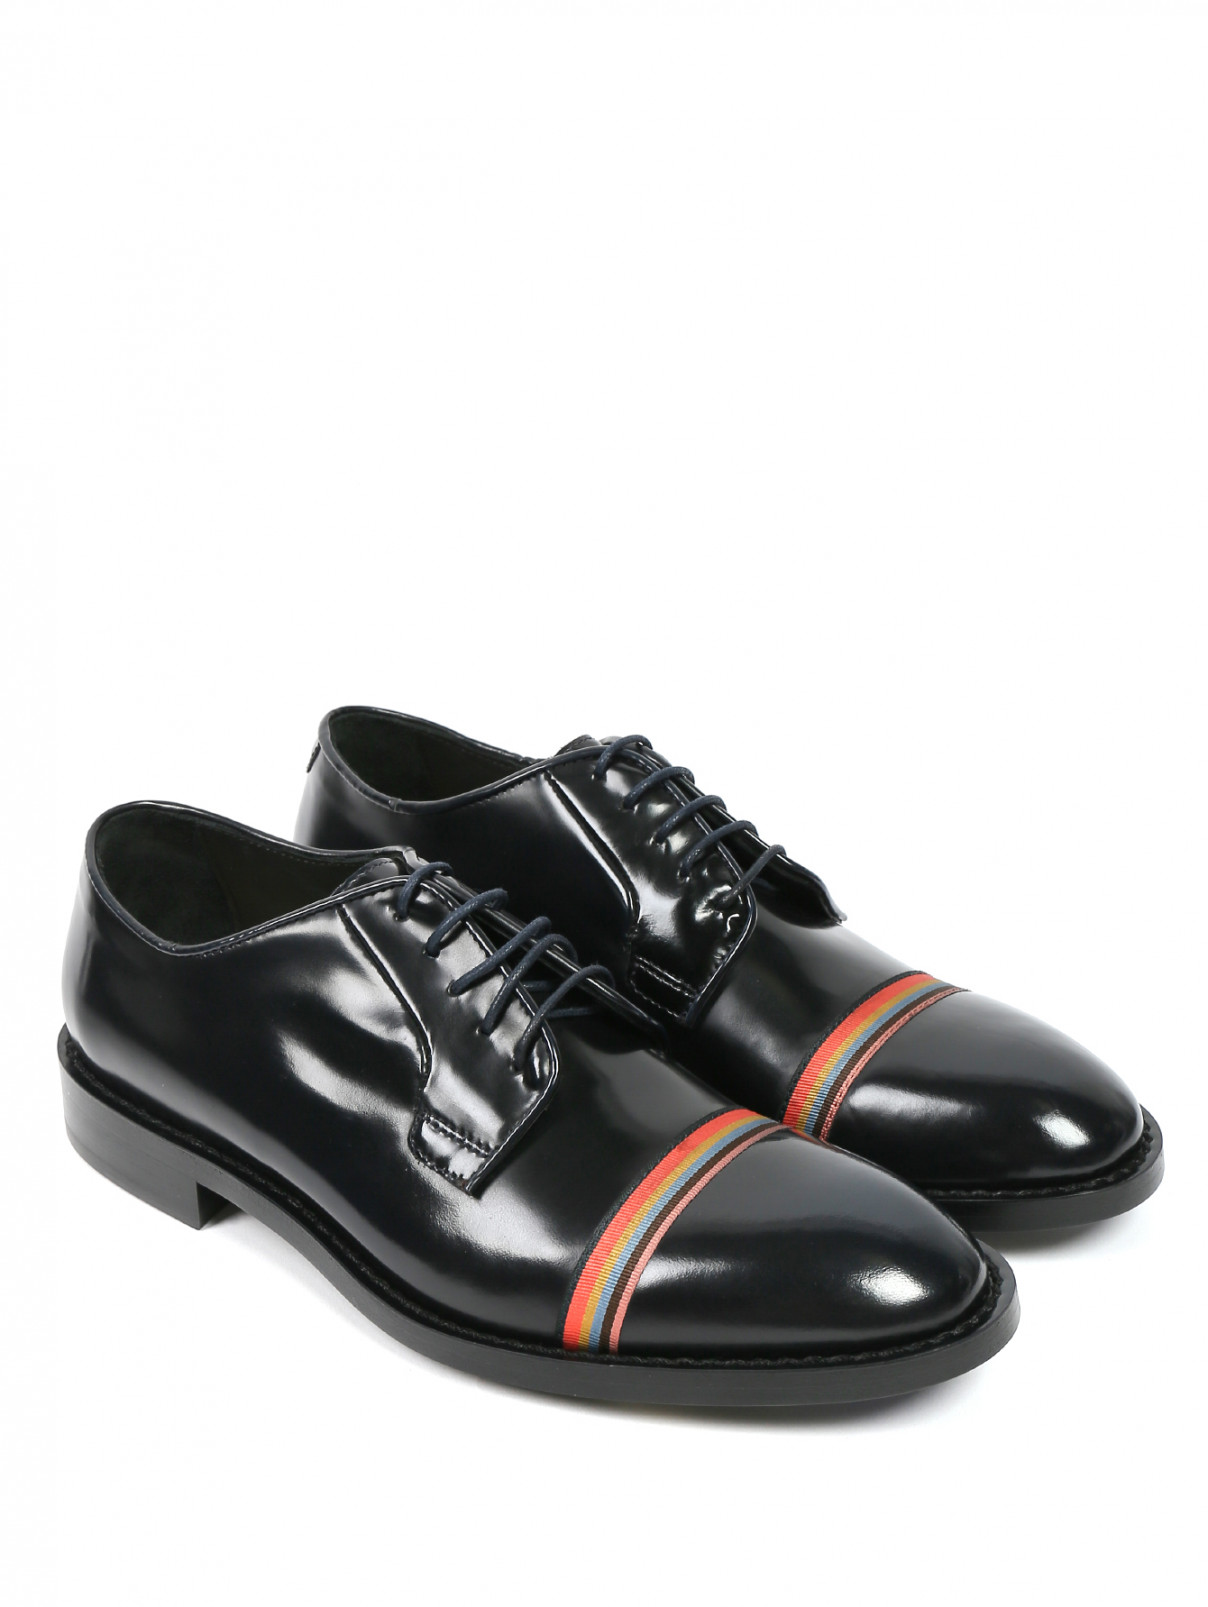 Ботинки из кожи с контрастной полоской Paul Smith  –  Общий вид  – Цвет:  Черный